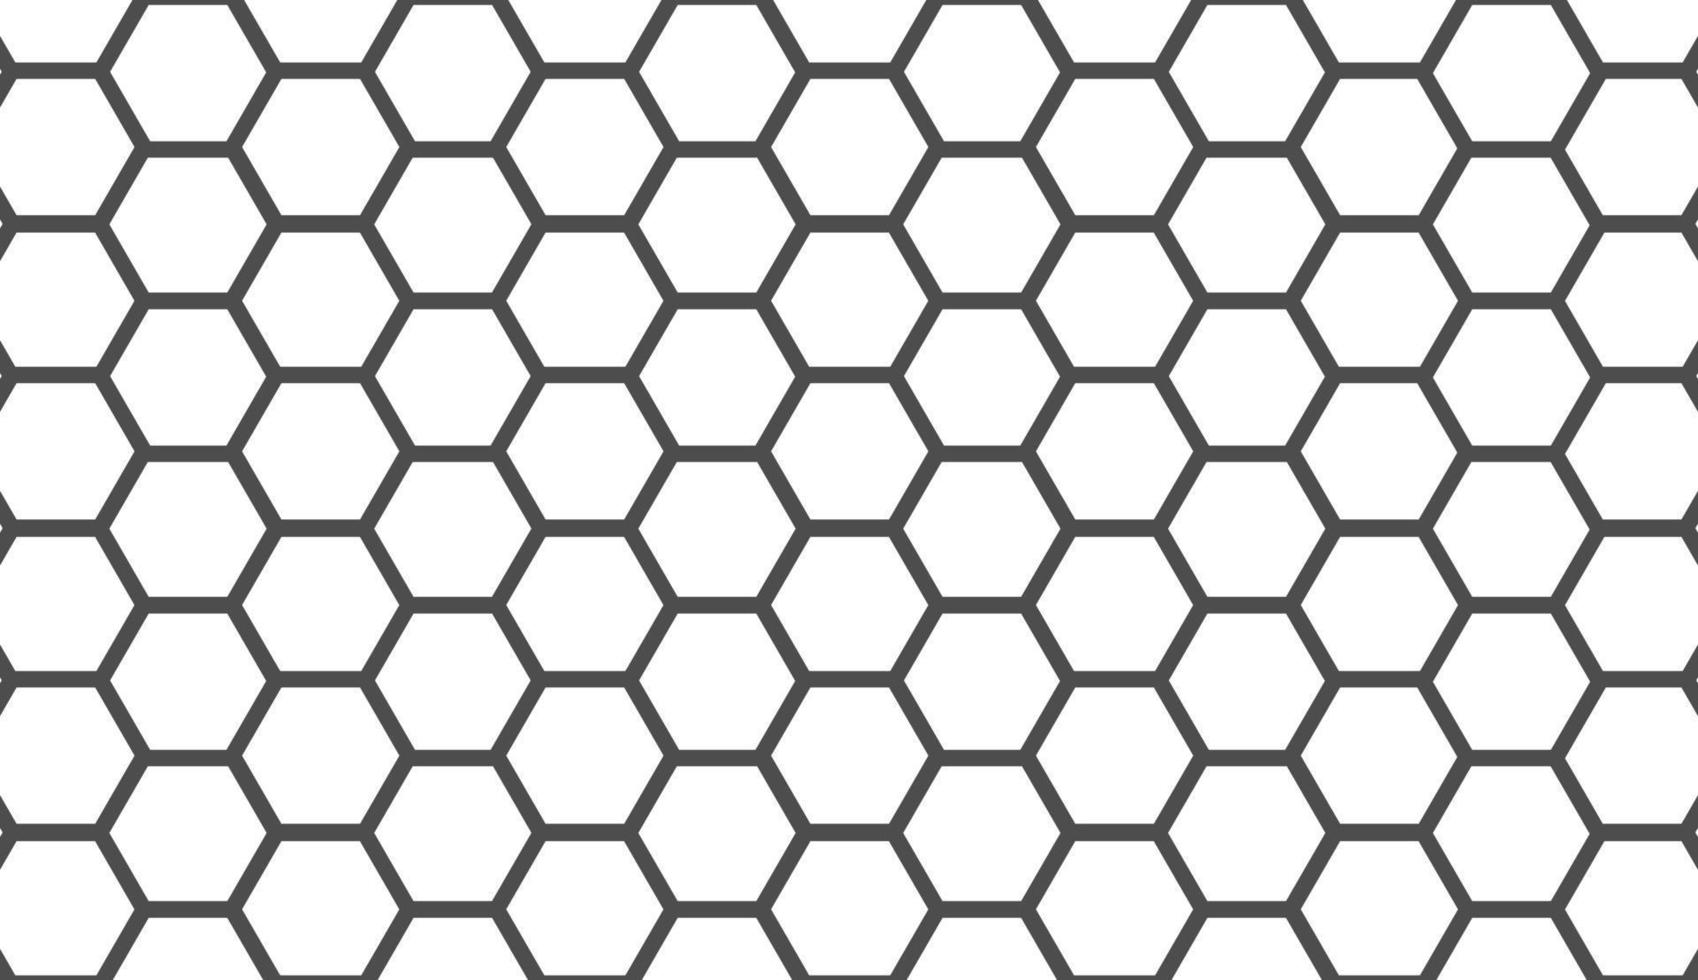 naadloos patroon. eenvoudig zeshoekig ornament. minimalistisch zwart-wit patroonontwerp. kan worden gebruikt voor posters, brochures, ansichtkaarten en andere afdrukbehoeften. vector illustratie